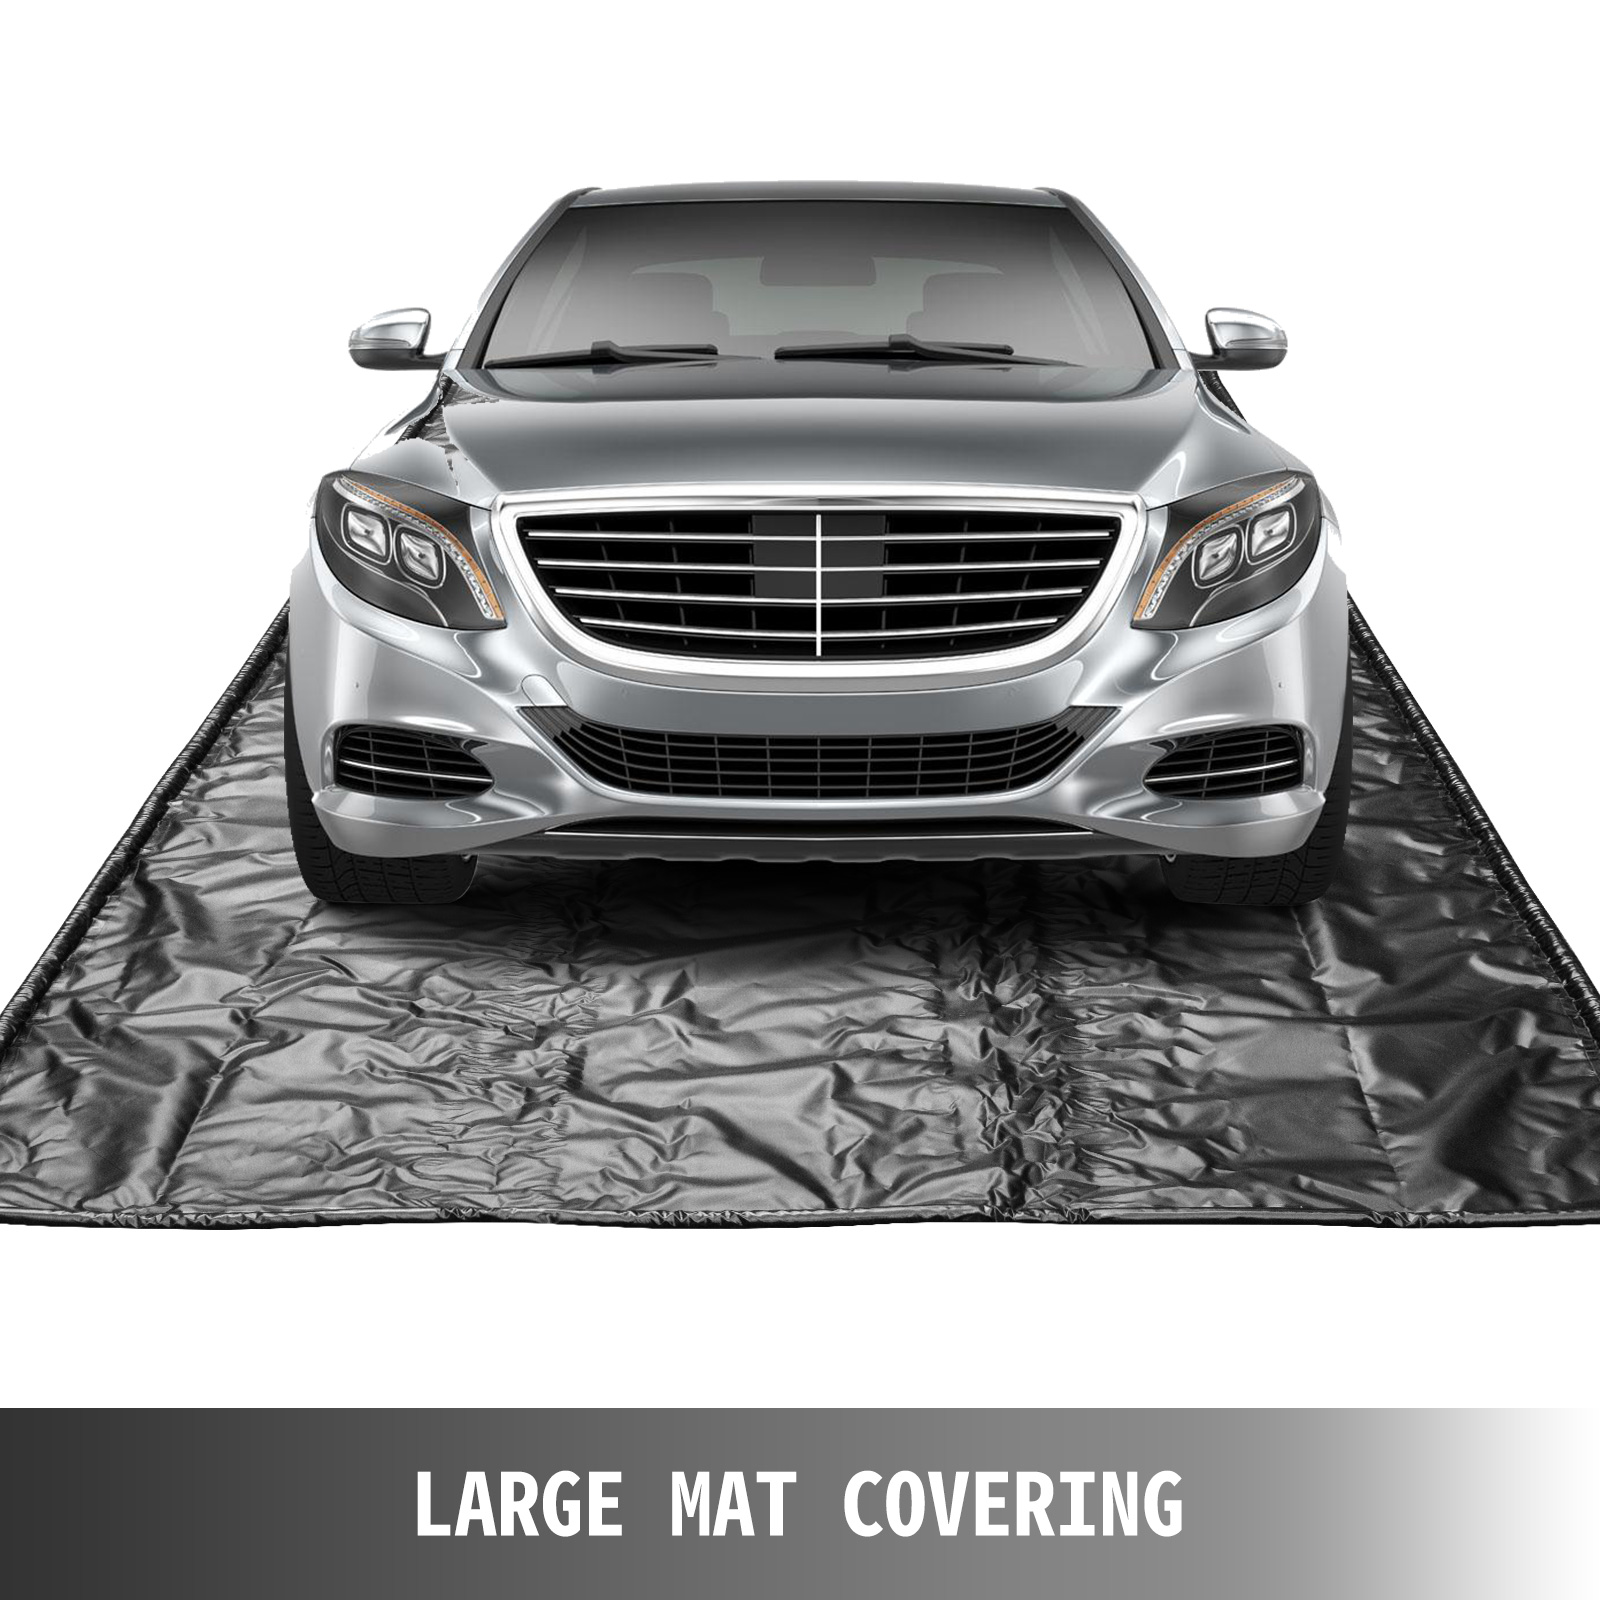 Protèges tapis de sol : protection tapis de sol pour voiture 250